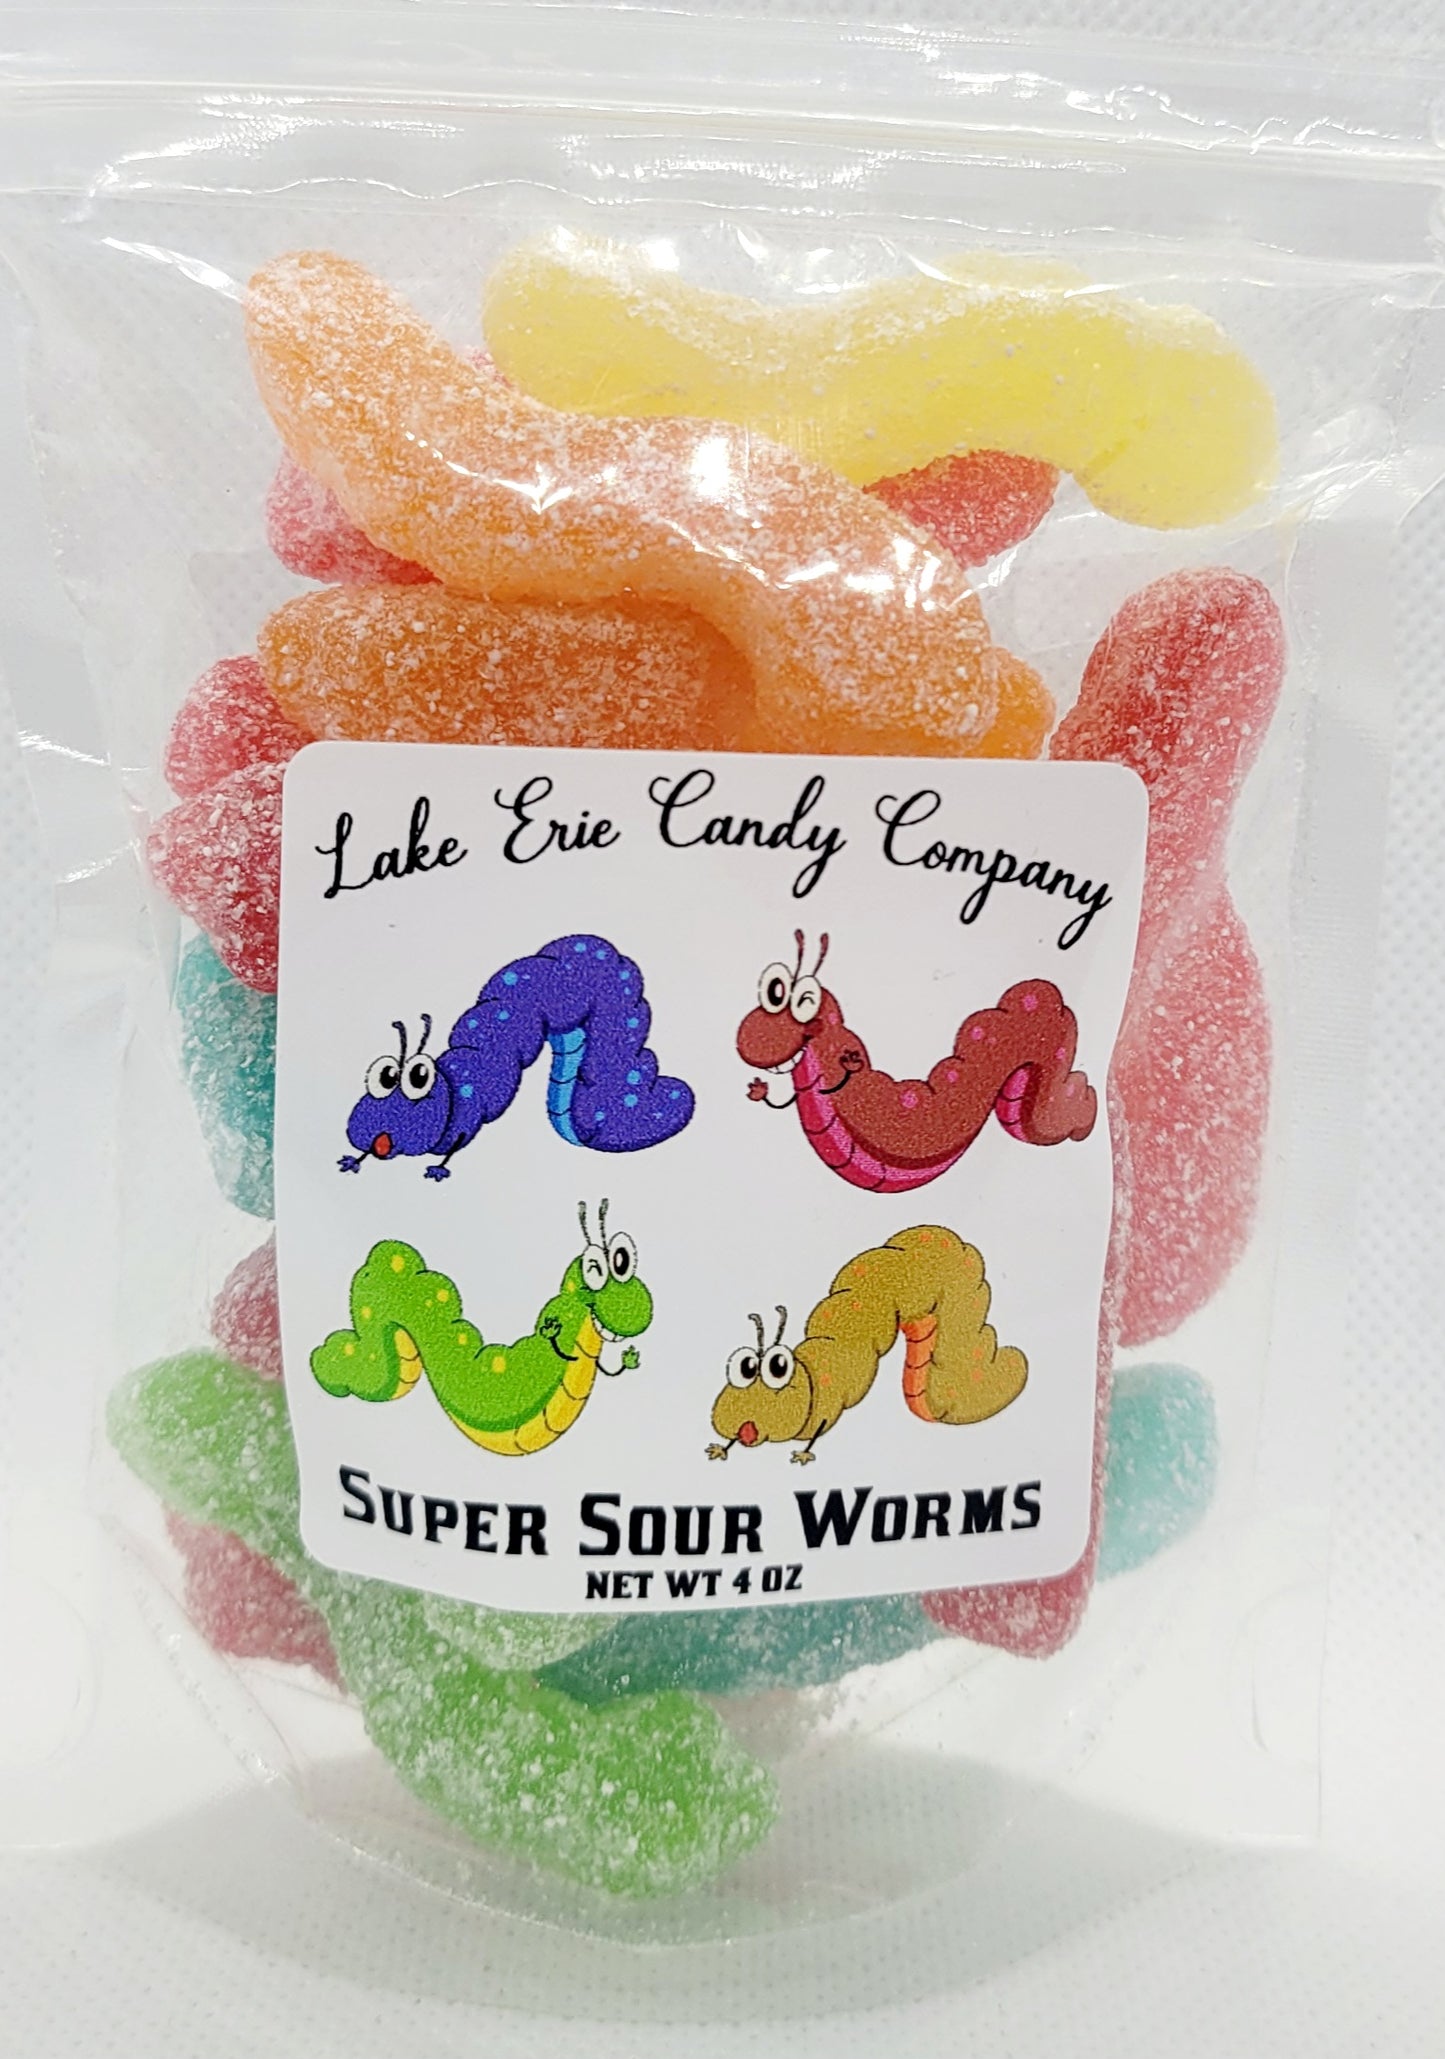 Super Sour Worms